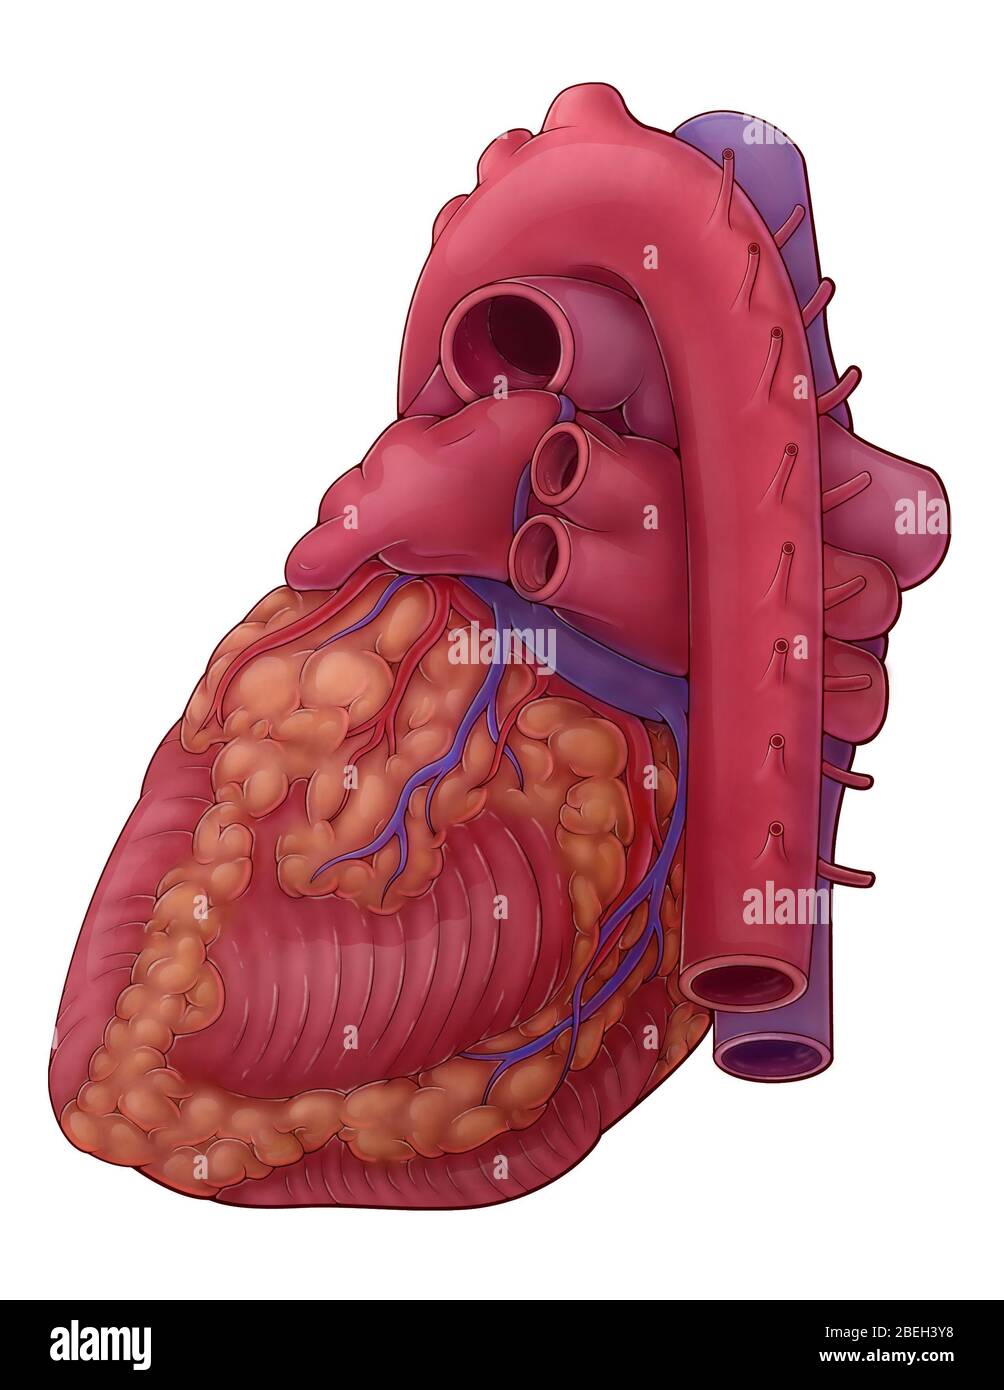 Un'illustrazione del cuore da una vista posterolaterale che illustra i rami dell'arteria coronaria, del seno coronarico, delle vene polmonari, delle arterie polmonari e dell'aorta. Foto Stock